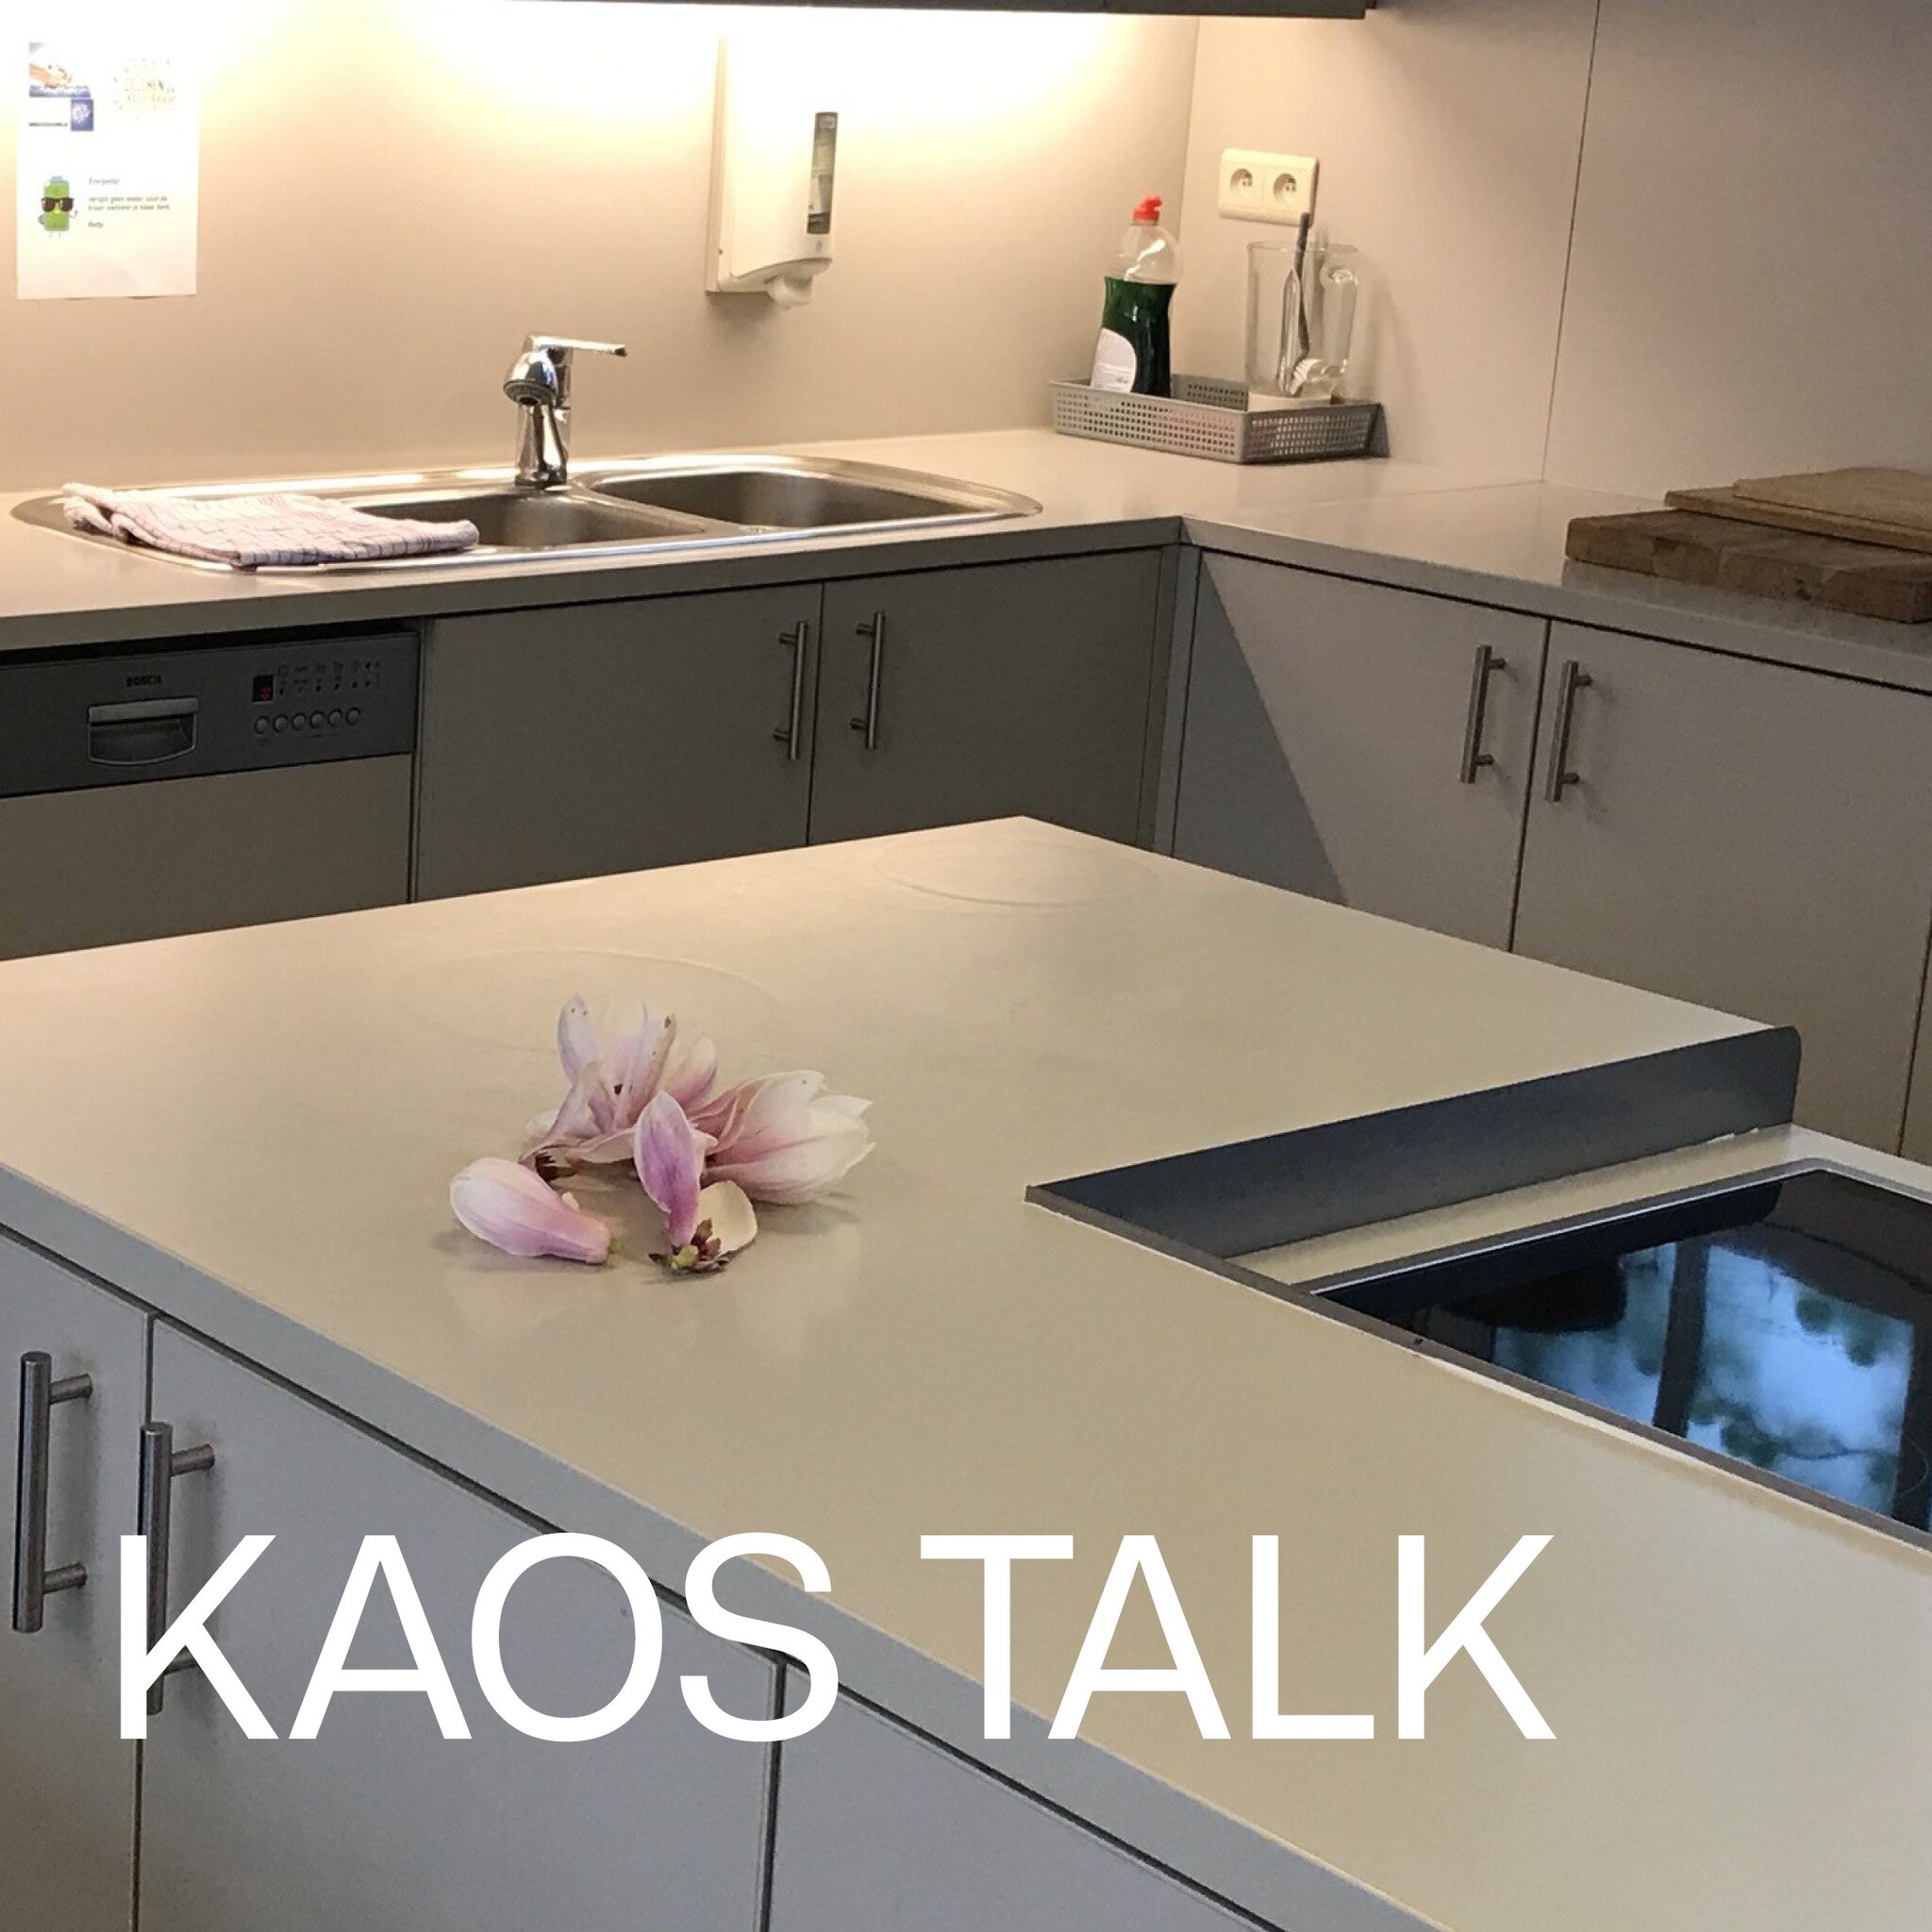 Tijdens hun KAOS talk delen huidige KAOS-residenten Mattie en Sophie hun collectieve praktijk over wonen en (dis)verschijnen in gesprek met twee uitgenodigde kunstenaars.
Het gesprek, dat uitgaat van het minutieuze en het gebaar, zal aansluiten bij g